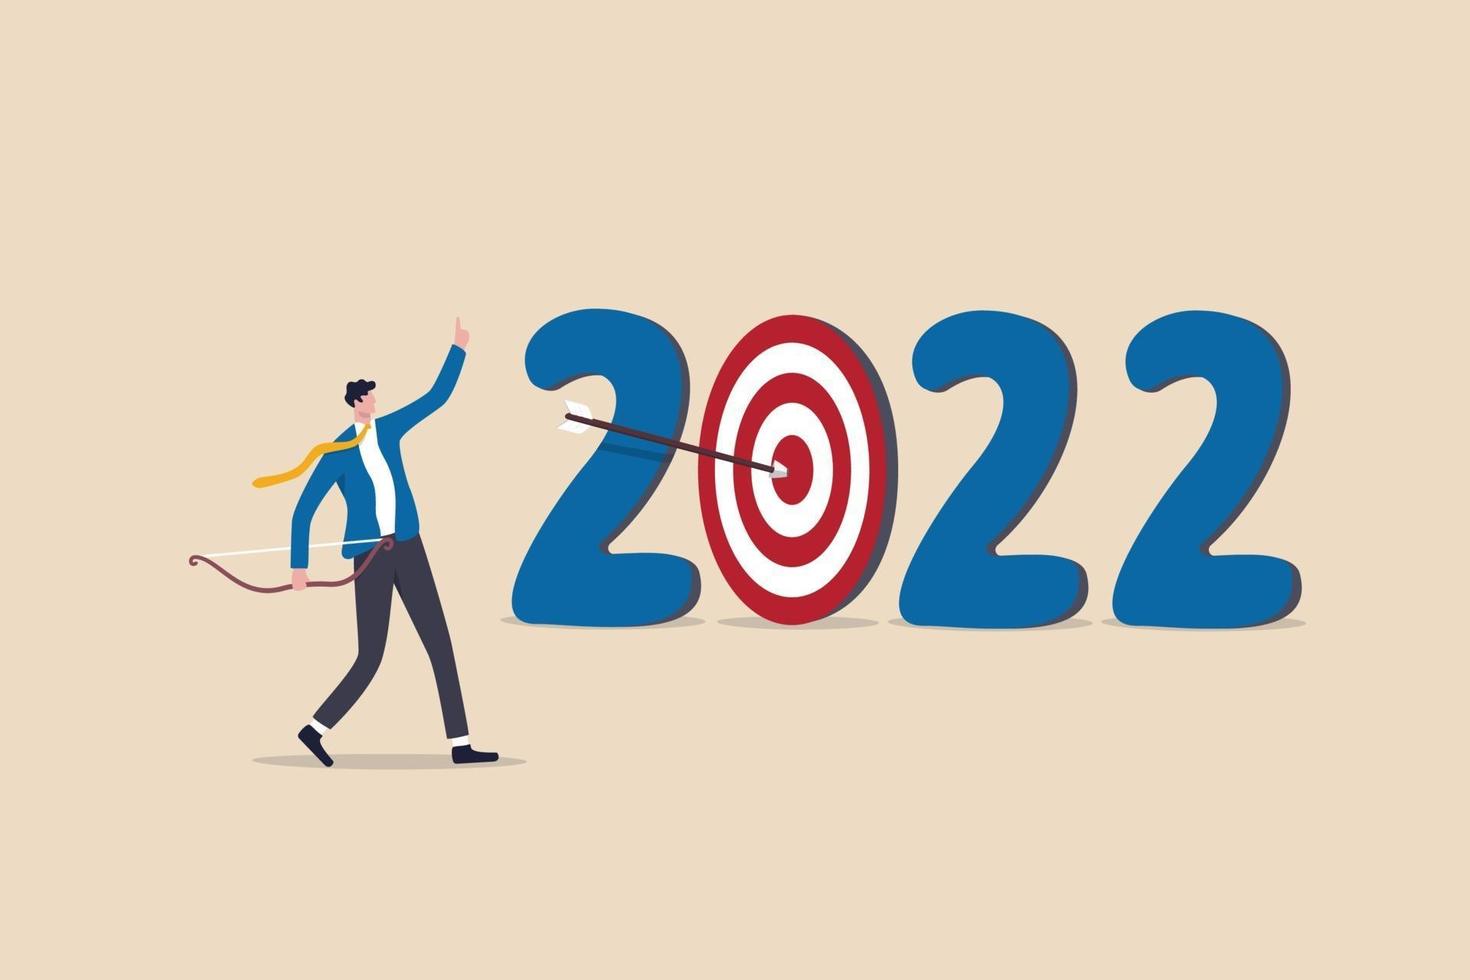 año 2022 objetivo comercial u objetivo de desarrollo personal, año nuevo vector